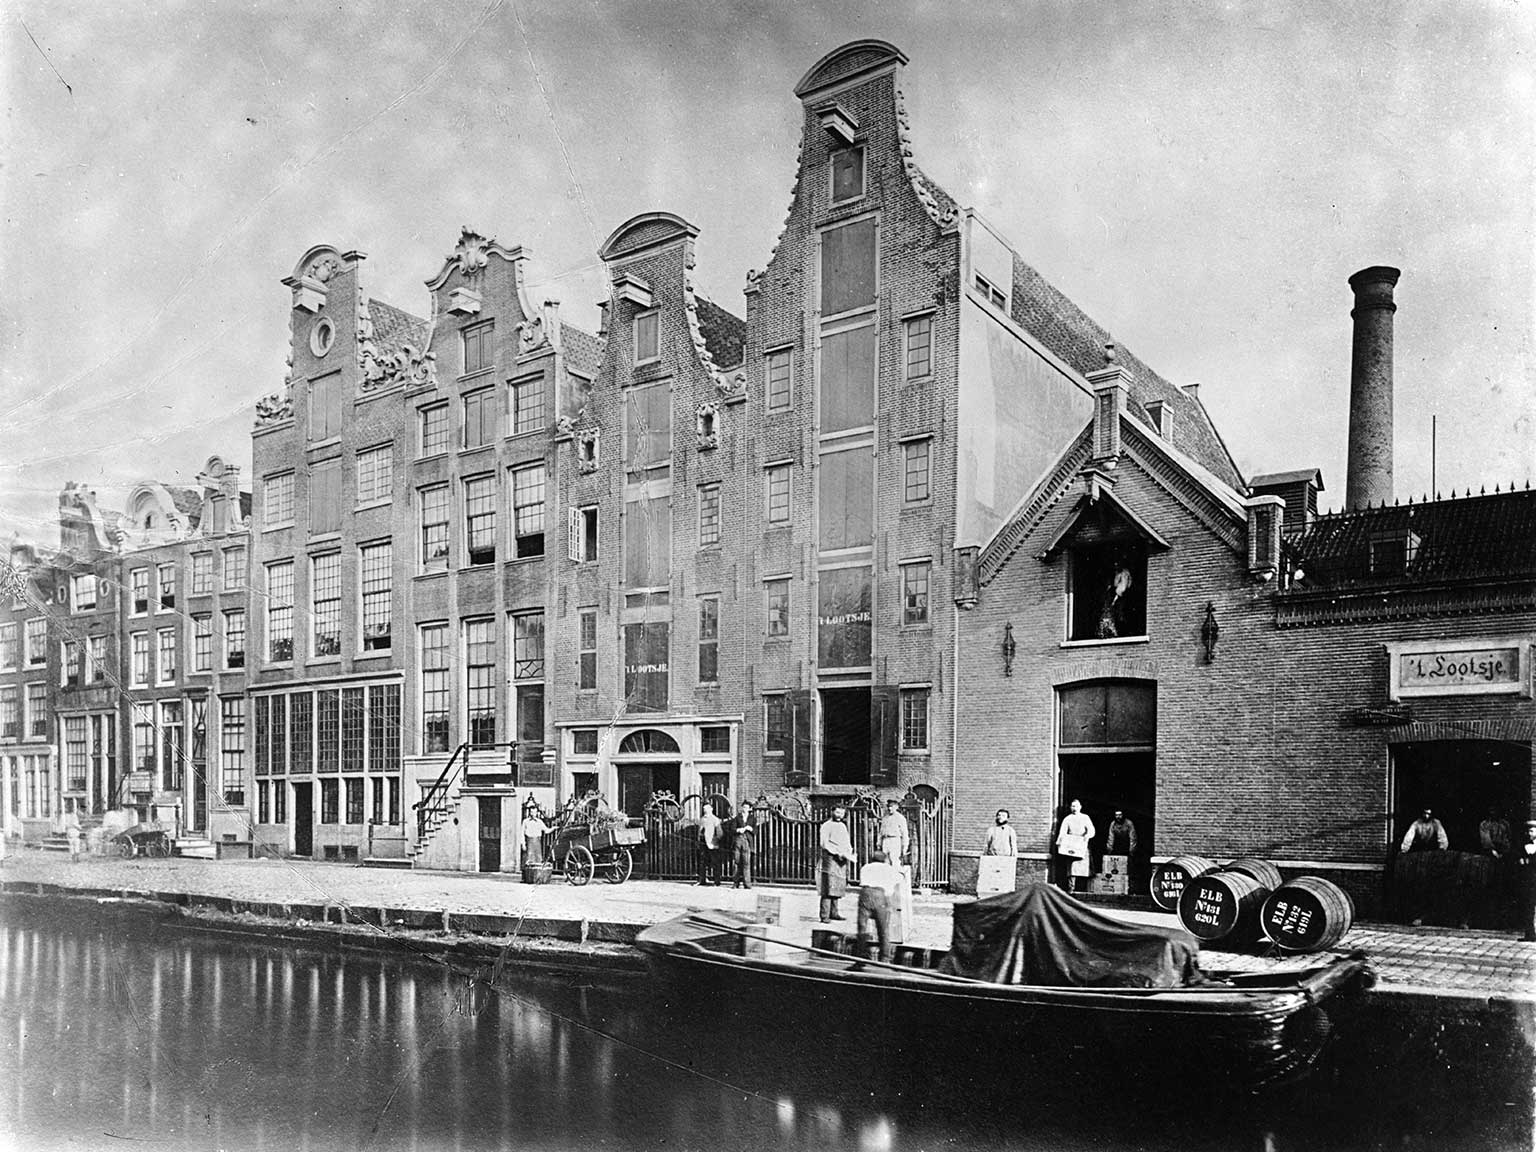 Rozengracht 99-111, Amsterdam, in 1890, panden van Lucas Bols, de Rozengracht nog niet gedempt